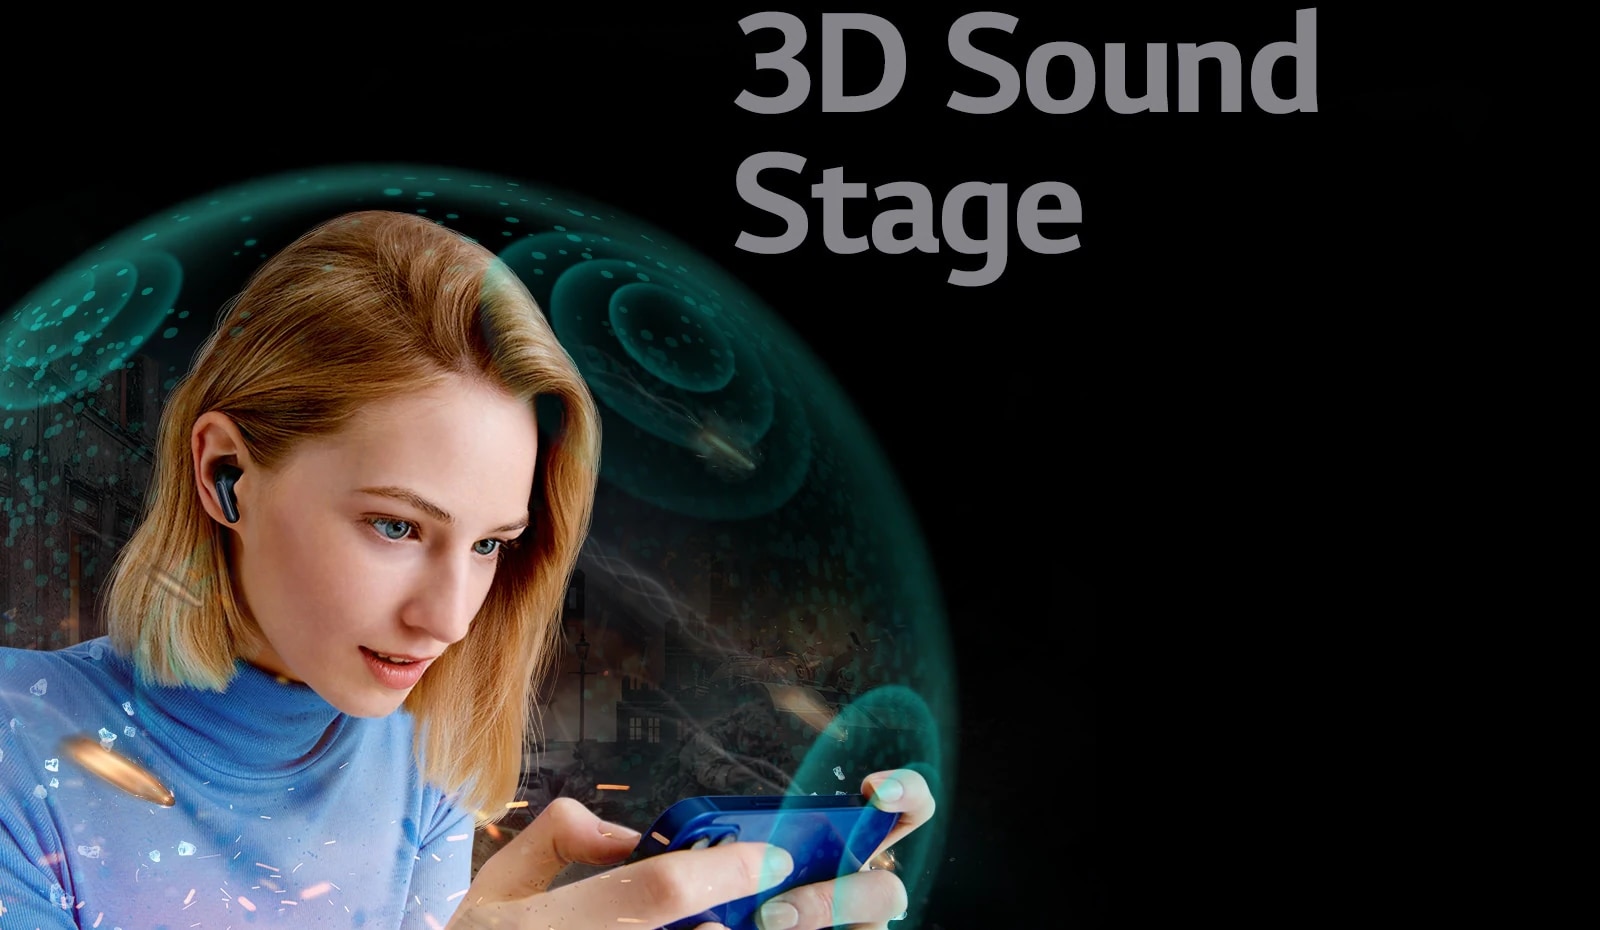 يحيط حاجز شفاف بسيدة تشاهد فيلمًا على هاتفها مرتدية TONE Free، وتعلوها الجملة "3D Sound stage".